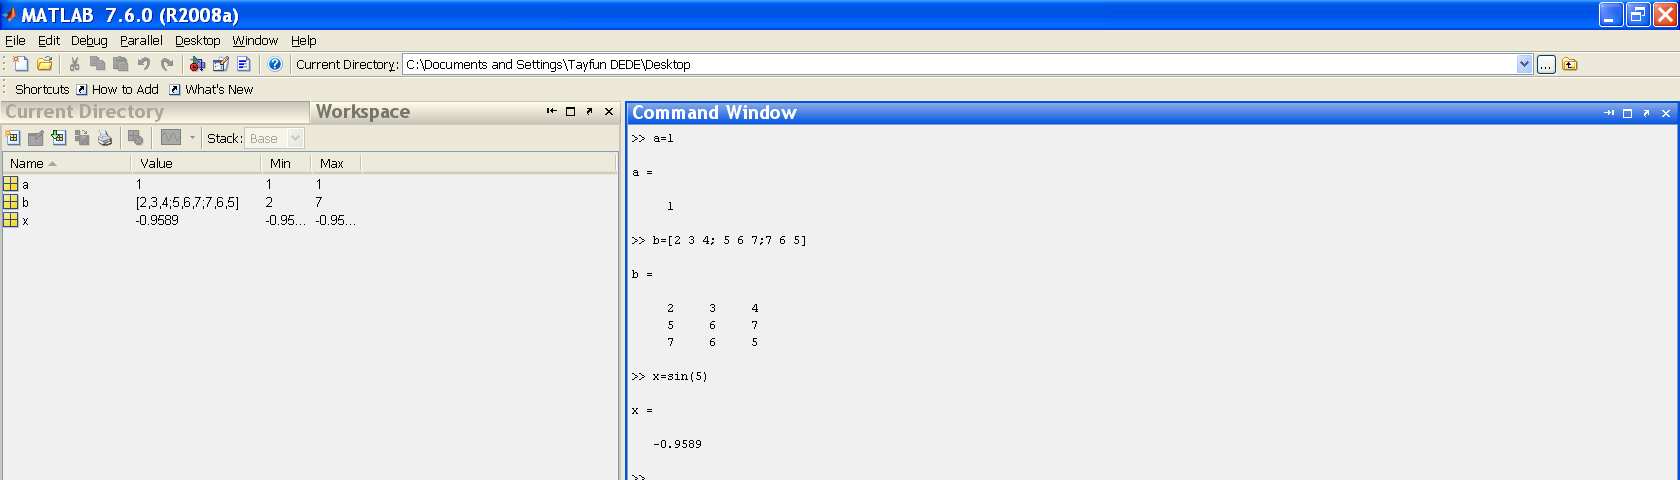 Matlaba Giriş / Pencereler Matlab çalıştırıldığında, Command Window Command History Workspace Current Directory